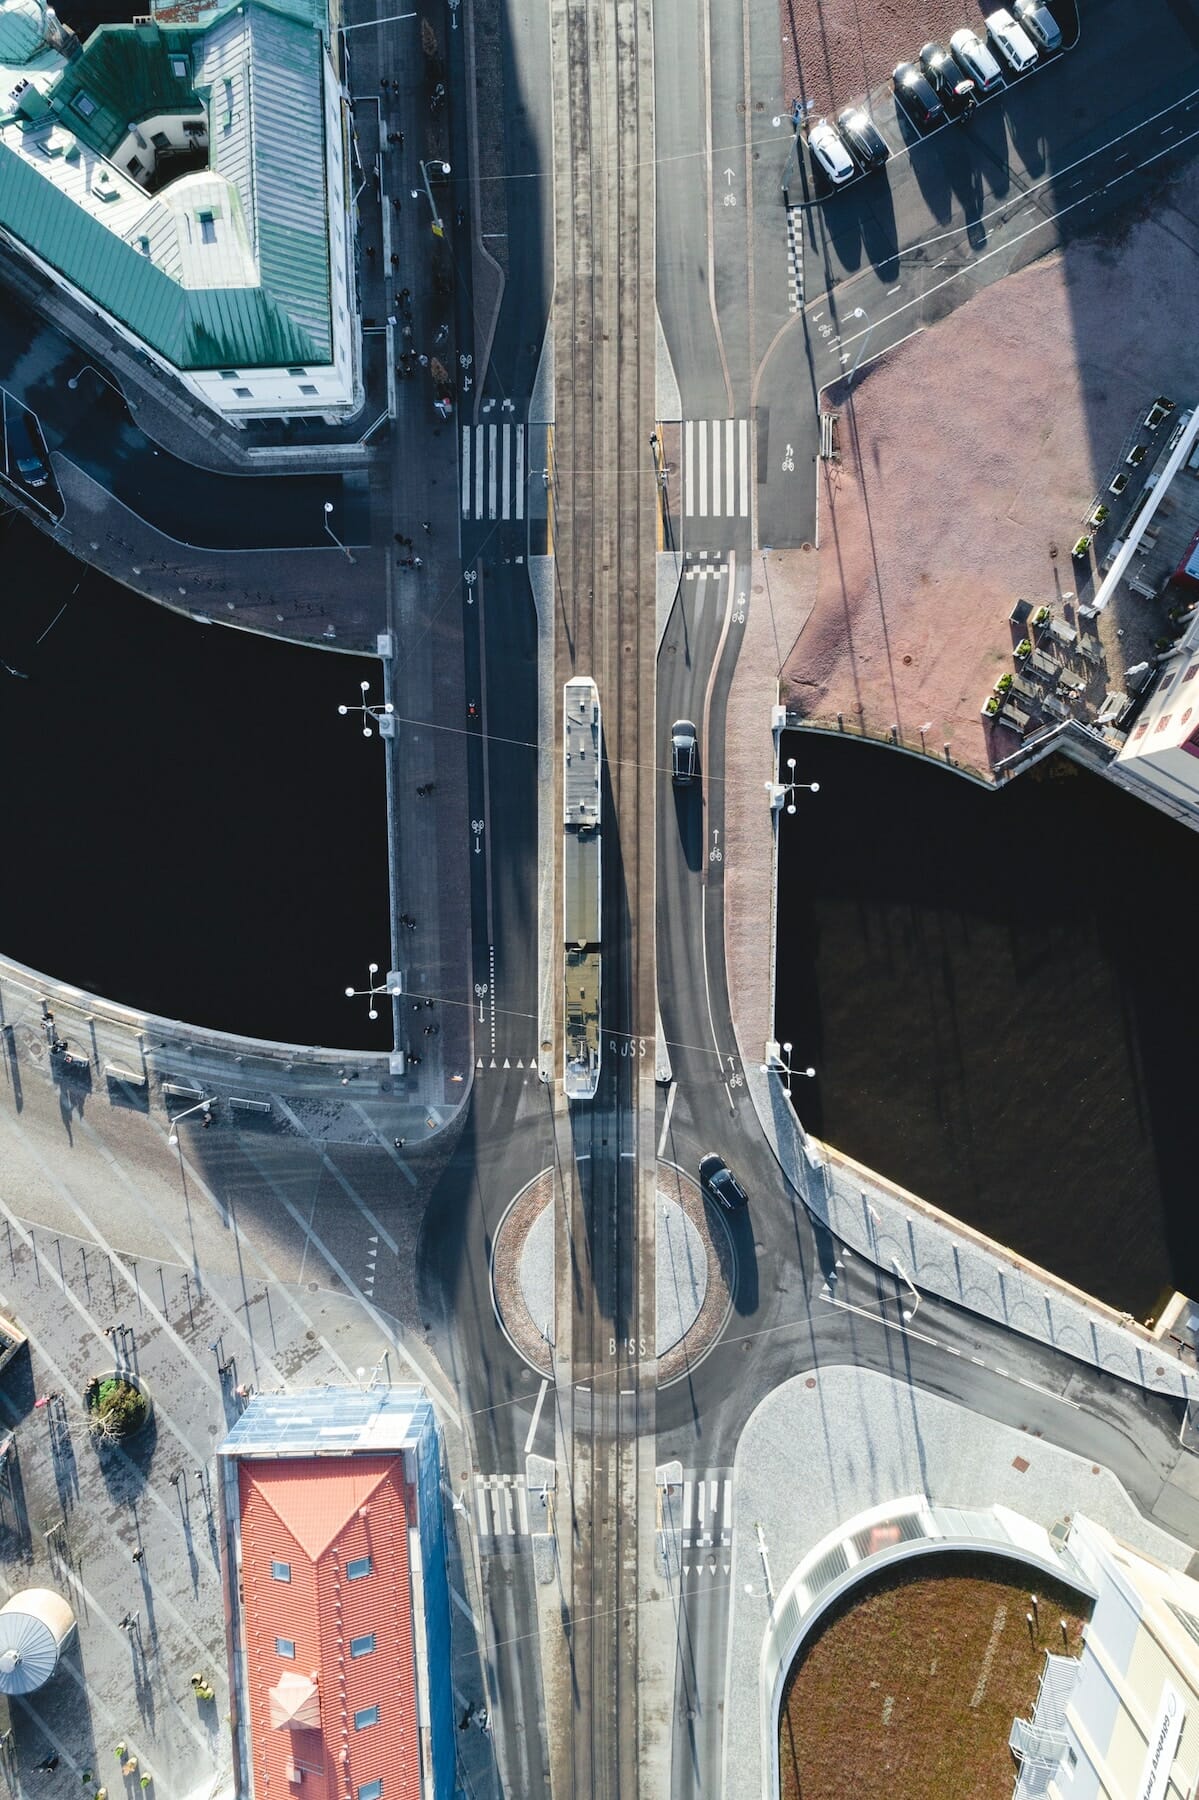 flygfoto över gata plus 2 fordon utrustade med smartloggs körjournal